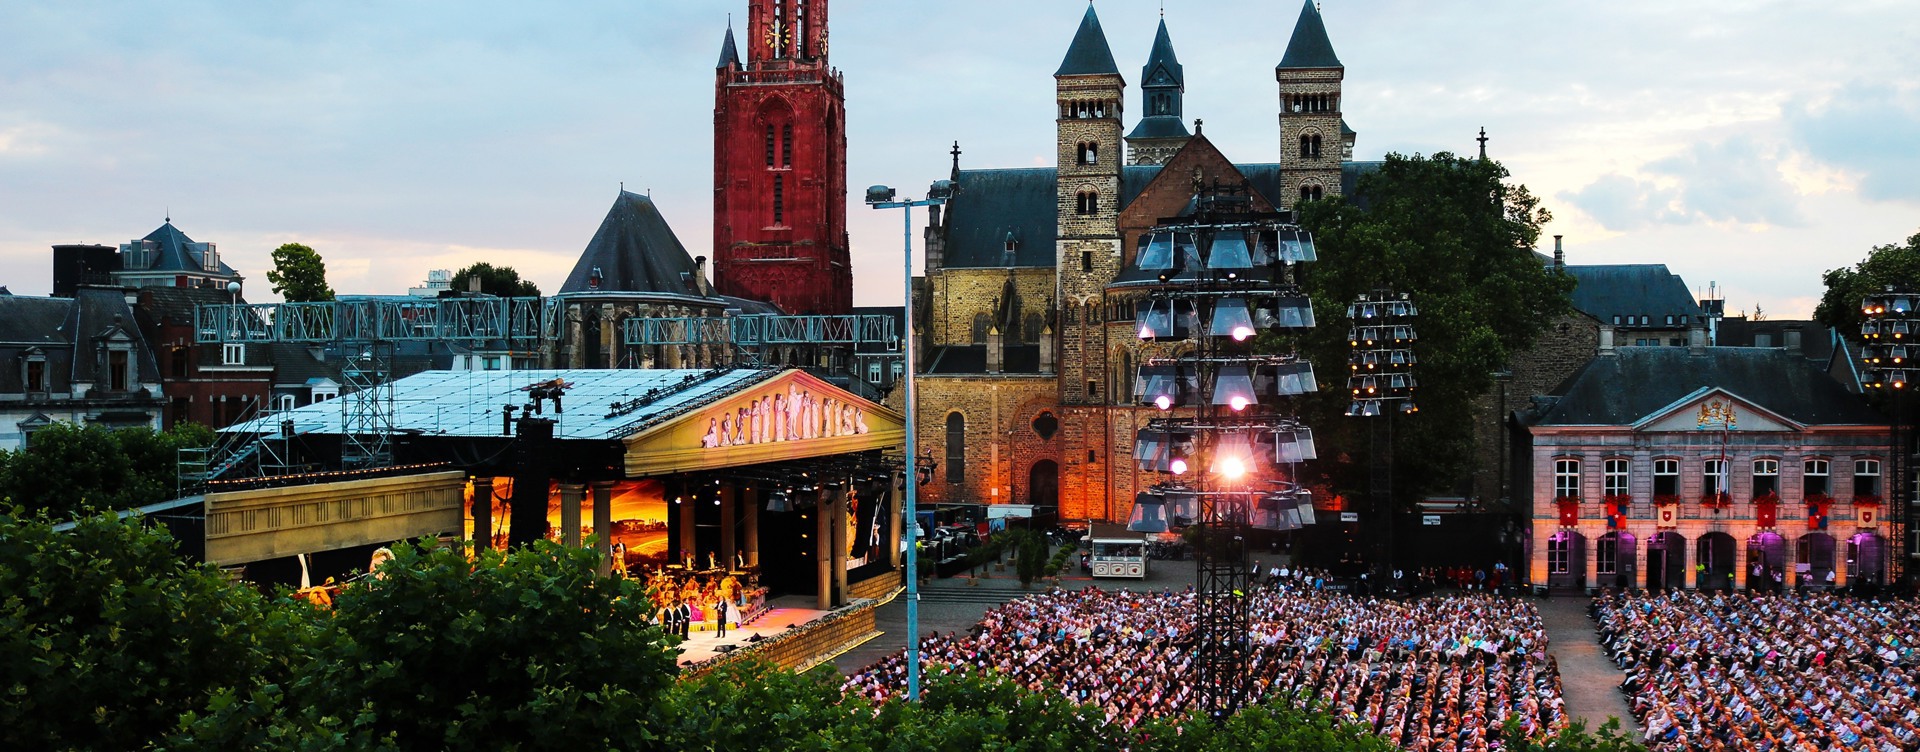 Entdecken Sie die besten Veranstaltungen 
in Maastricht während Ihres Aufenthalts